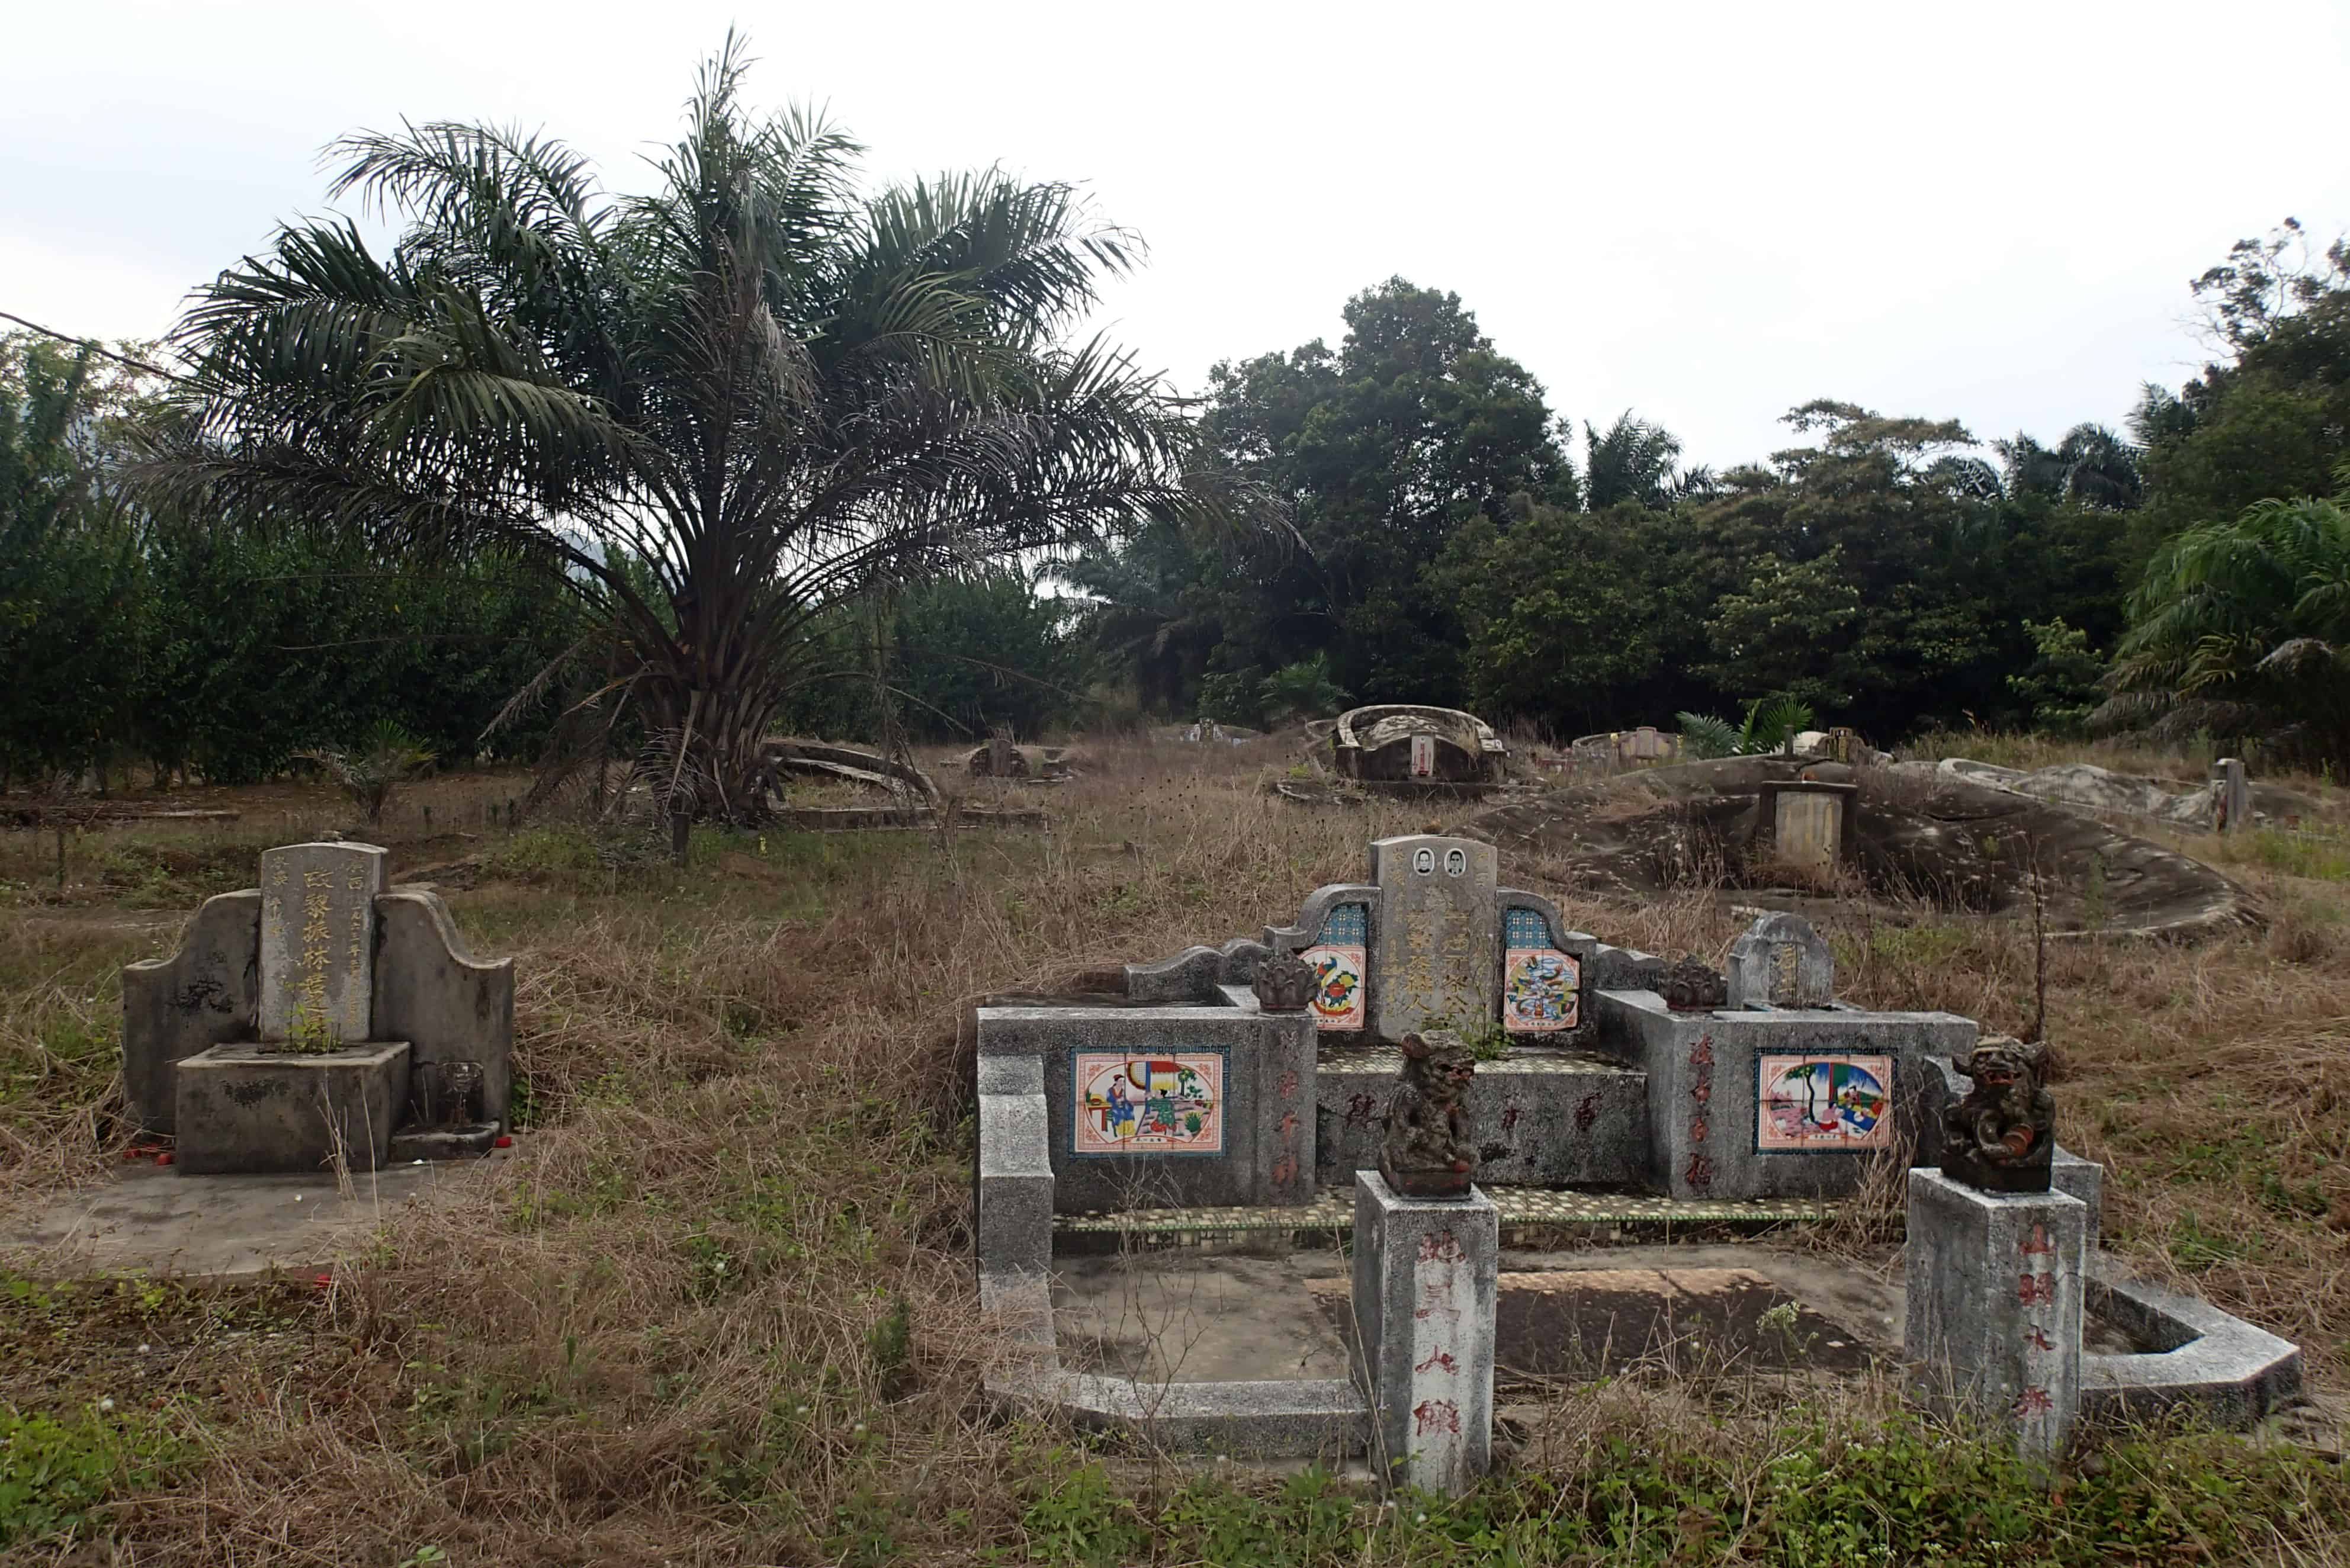 Vreemde verlaten begraafplaats ın the mıddle of nowhere met graven vanuıt verschıllende relıgıes 